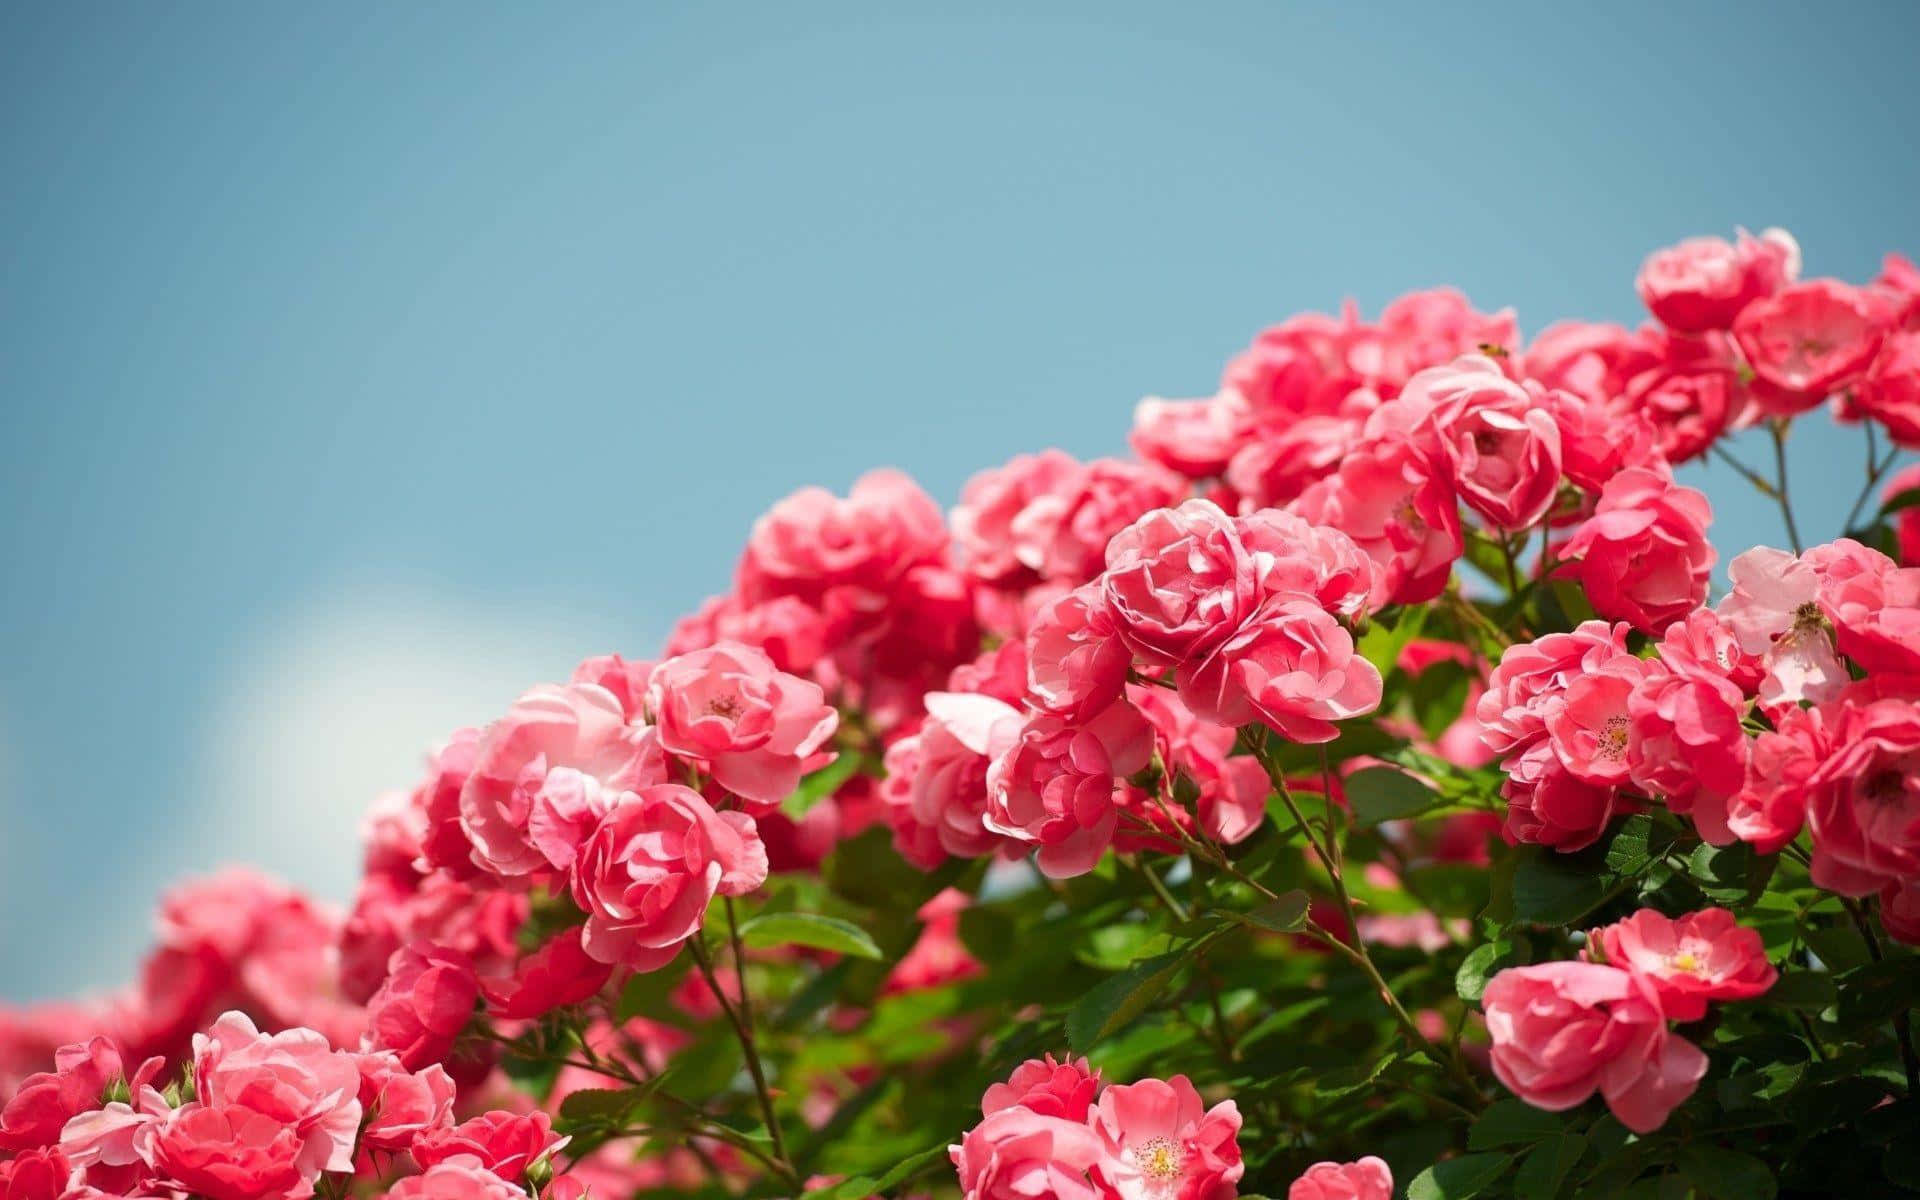 Trọn Bộ Hình nền Hoa Hồng đẹp lãng mạn tặng người yêu